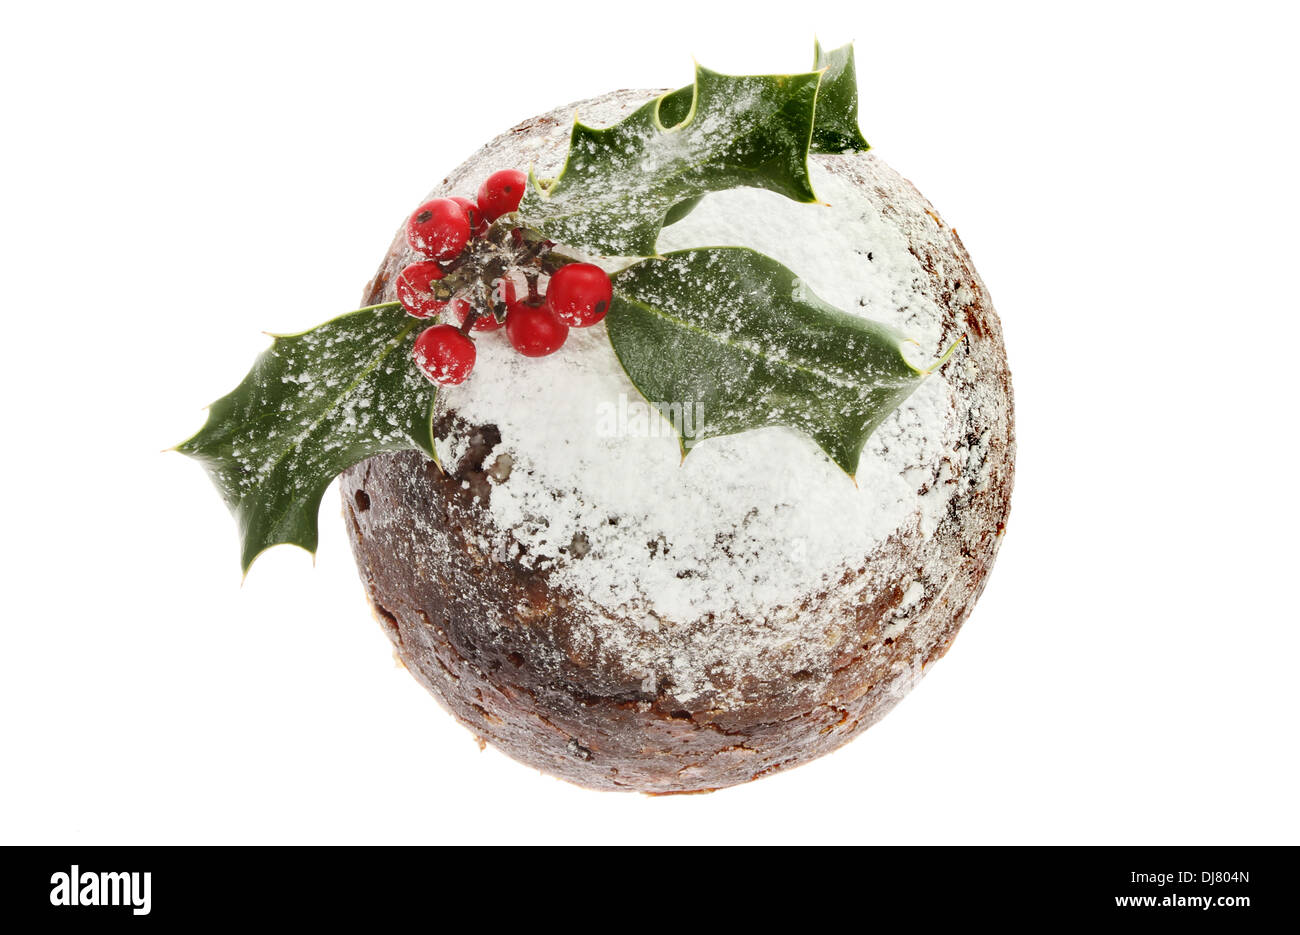 Holly geschmückt Christmas Pudding von oben gesehen Stockfoto